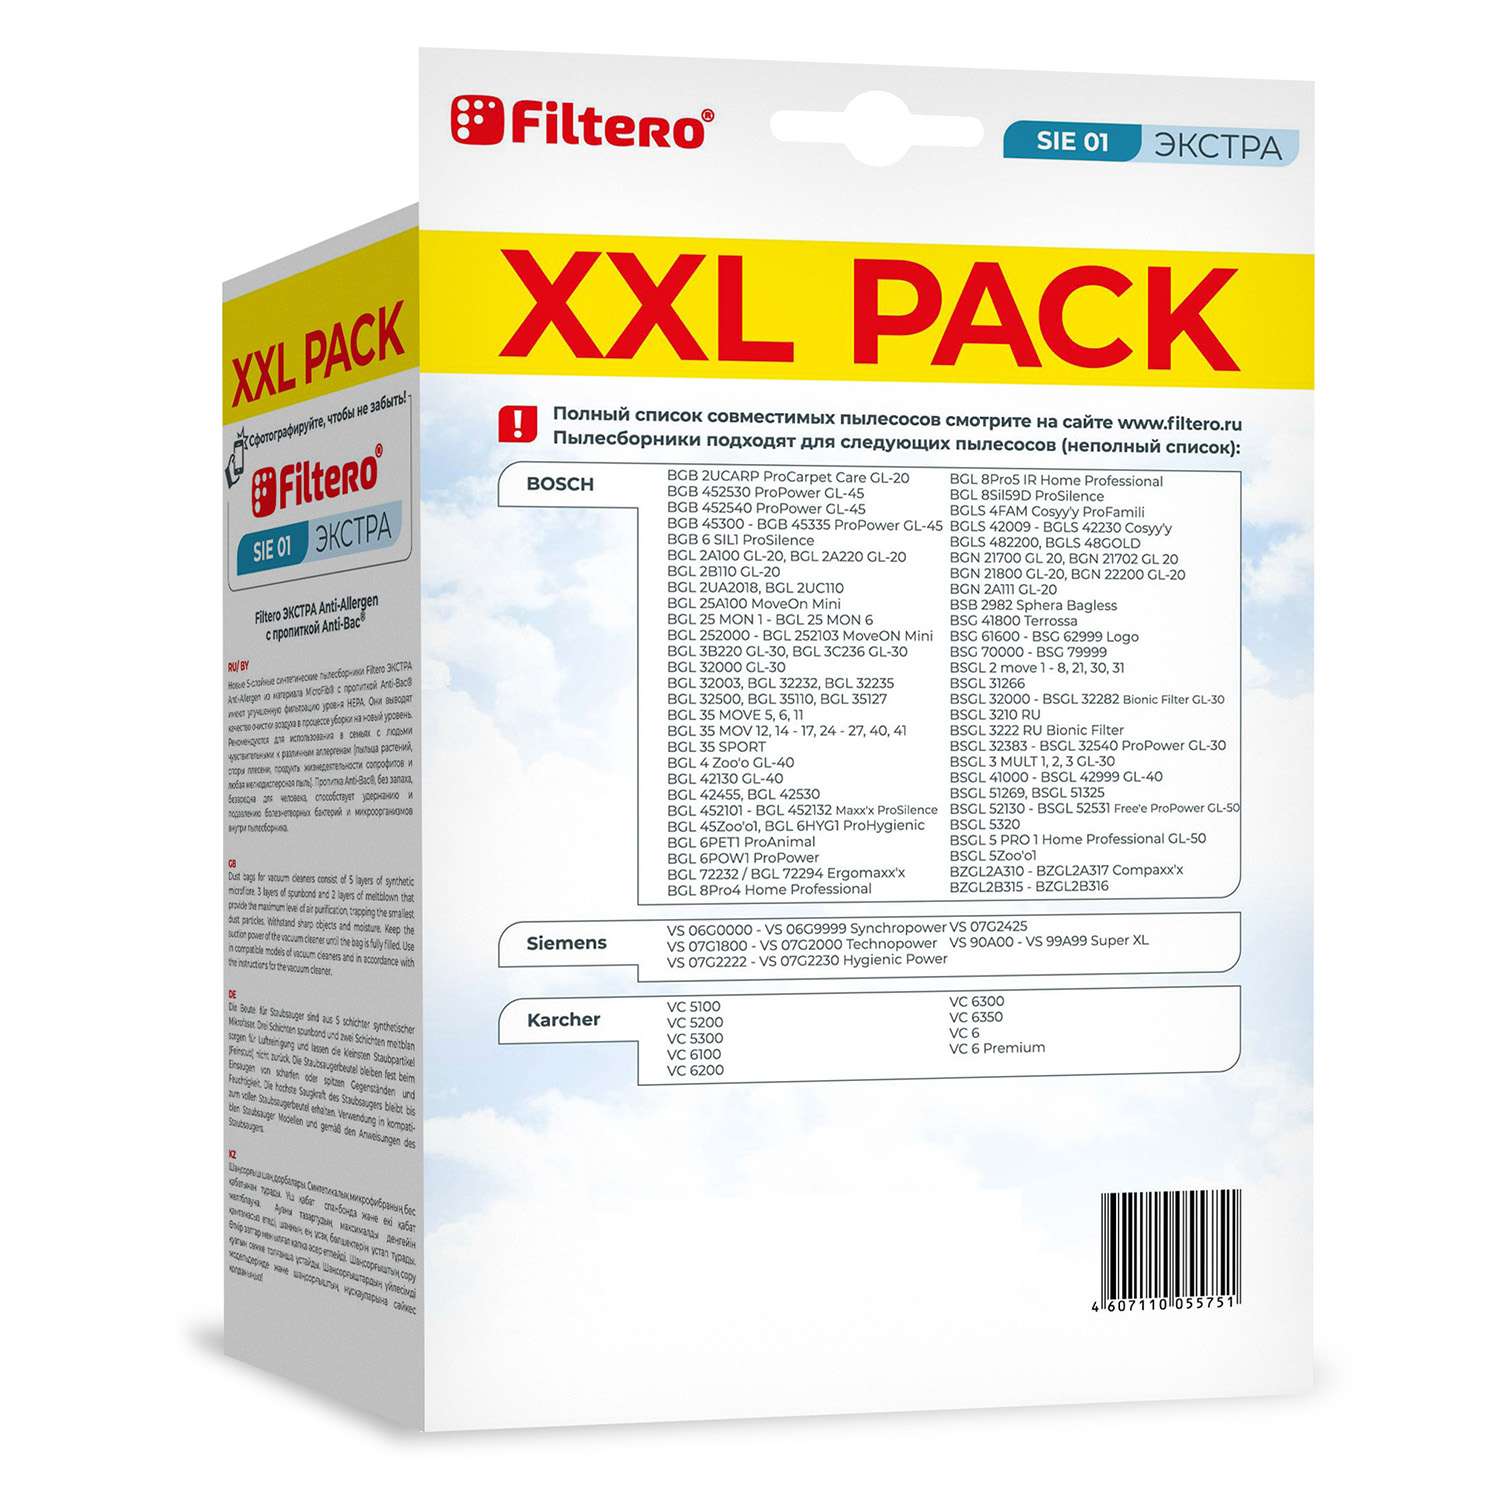 Пылесборники Filtero SIE 01 синтетические с антибактериальной обработкой XXL Pack Экстра 8 шт - фото 2